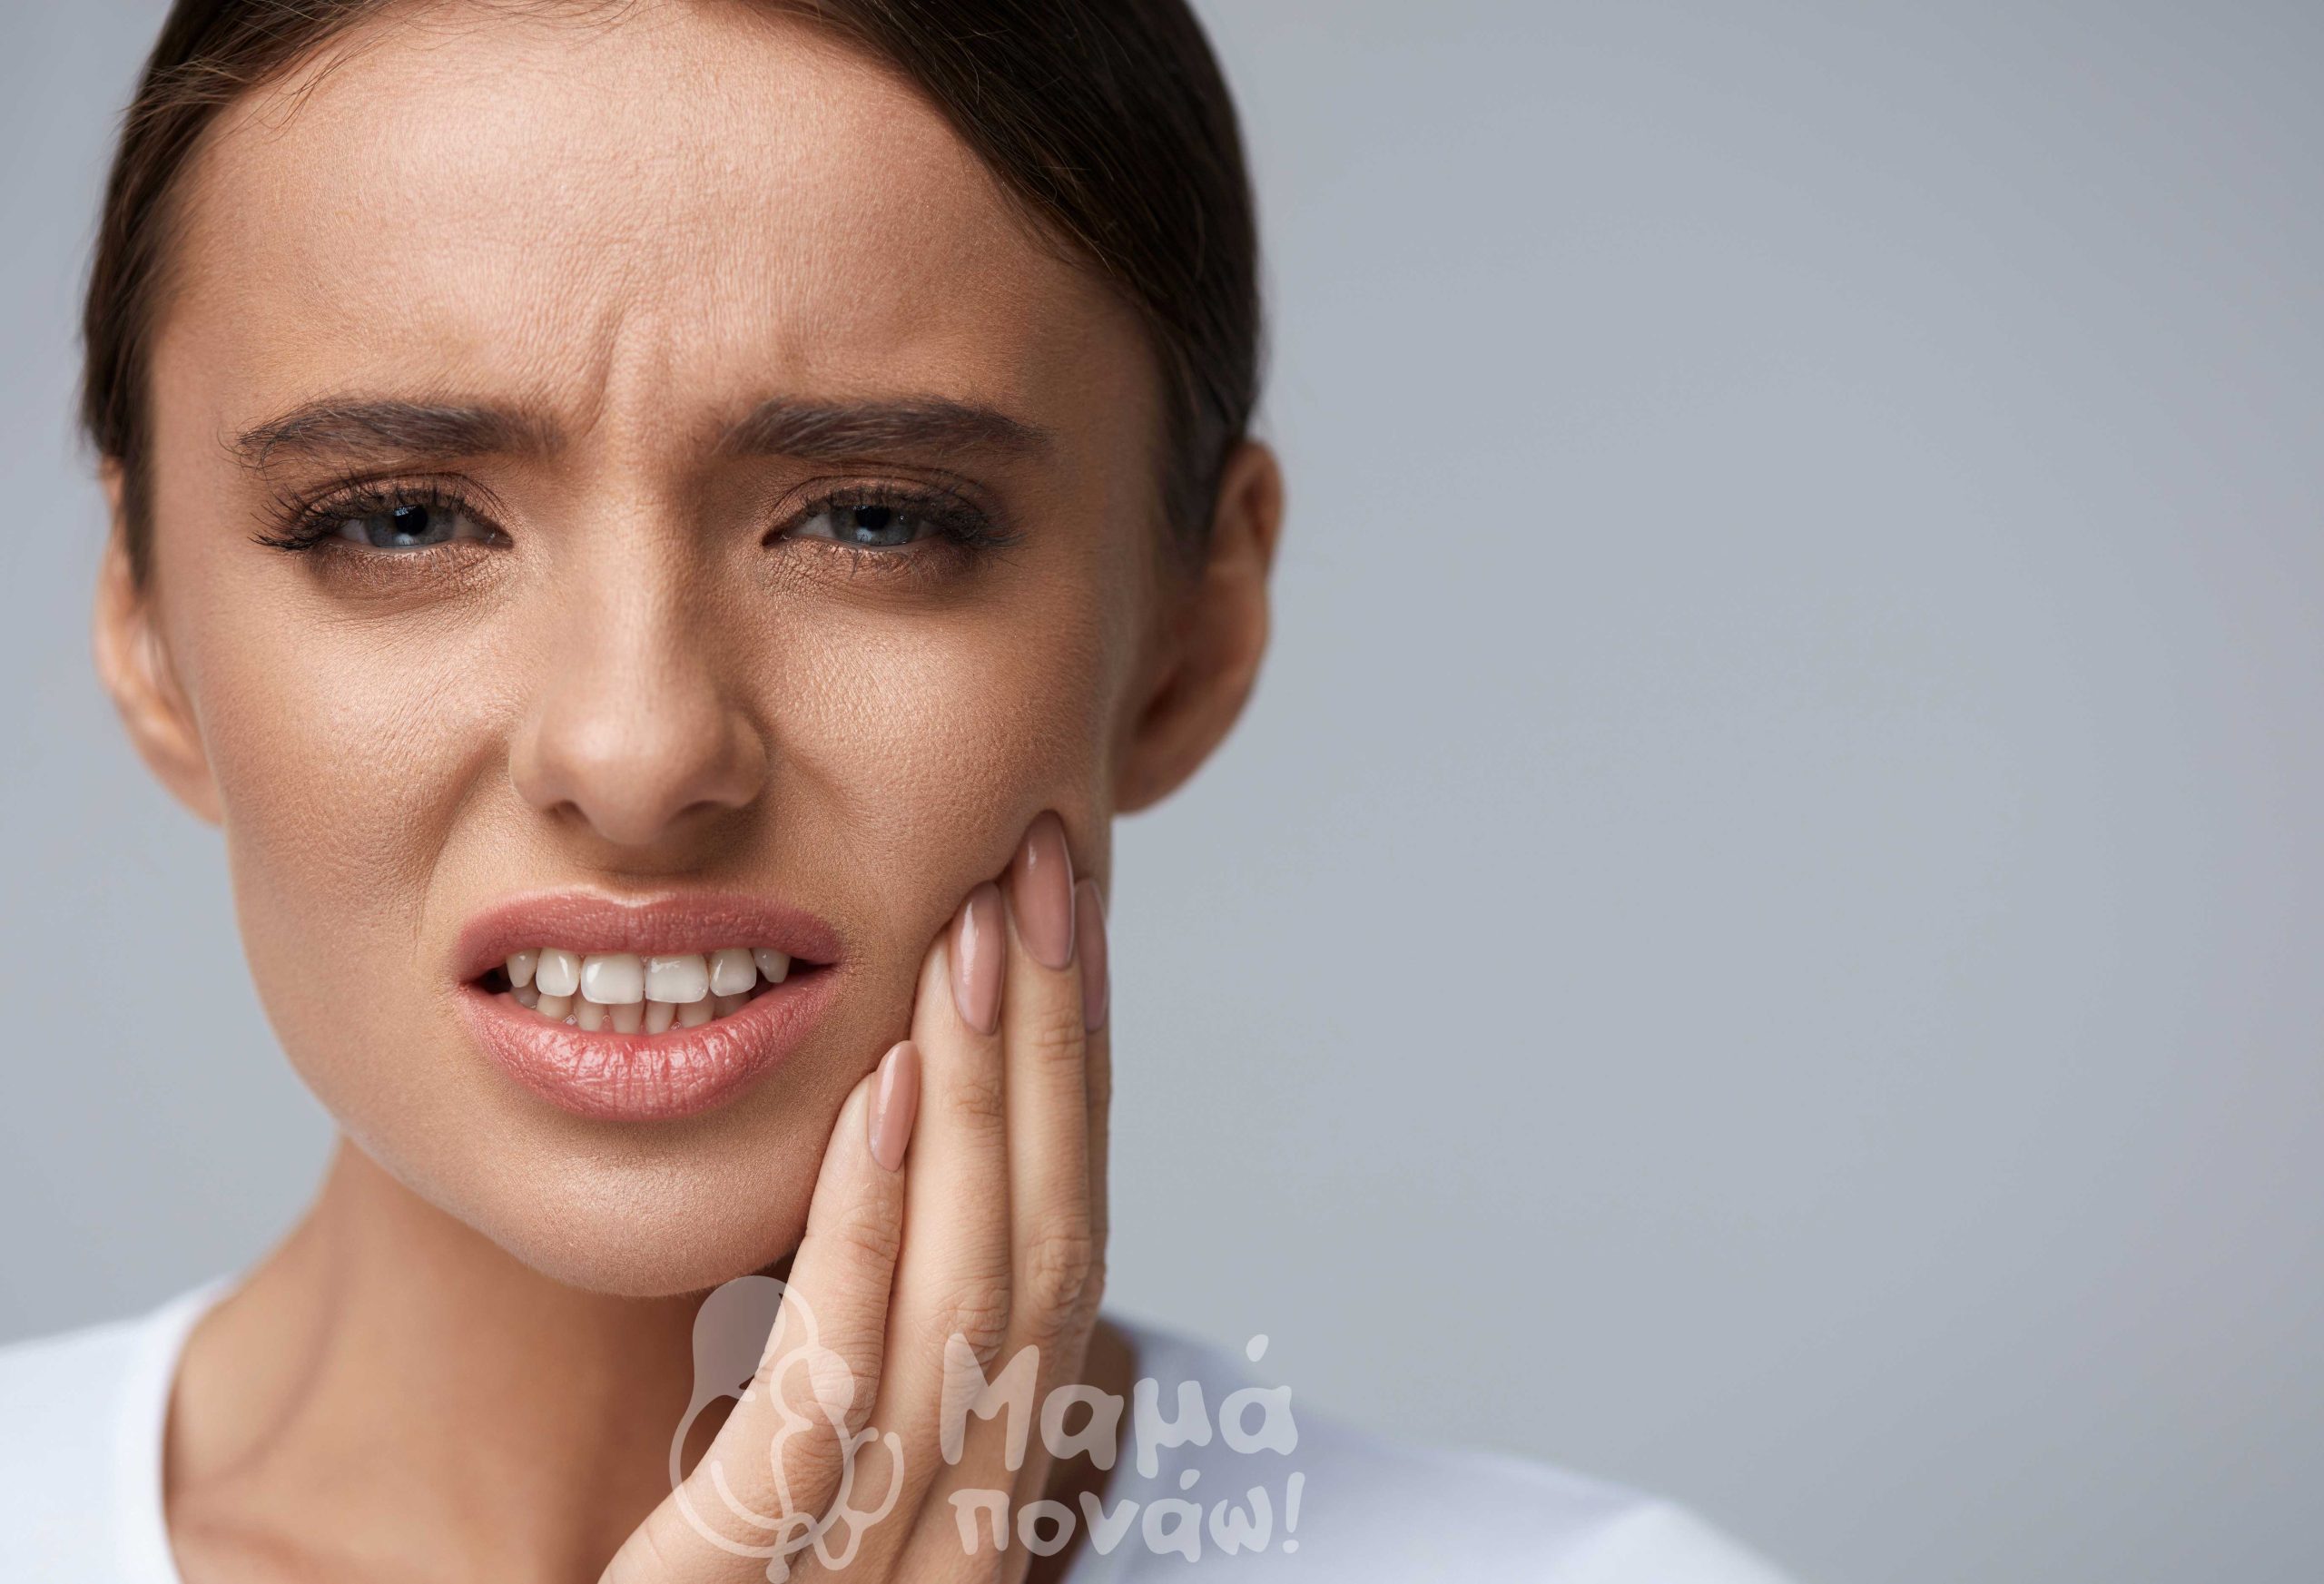 Ποια Είναι Τα Συμπτώματα Που Δείχνουν Ότι Πρέπει Να Επισκεφτούμε Άμεσα Τον Οδοντίατρο;